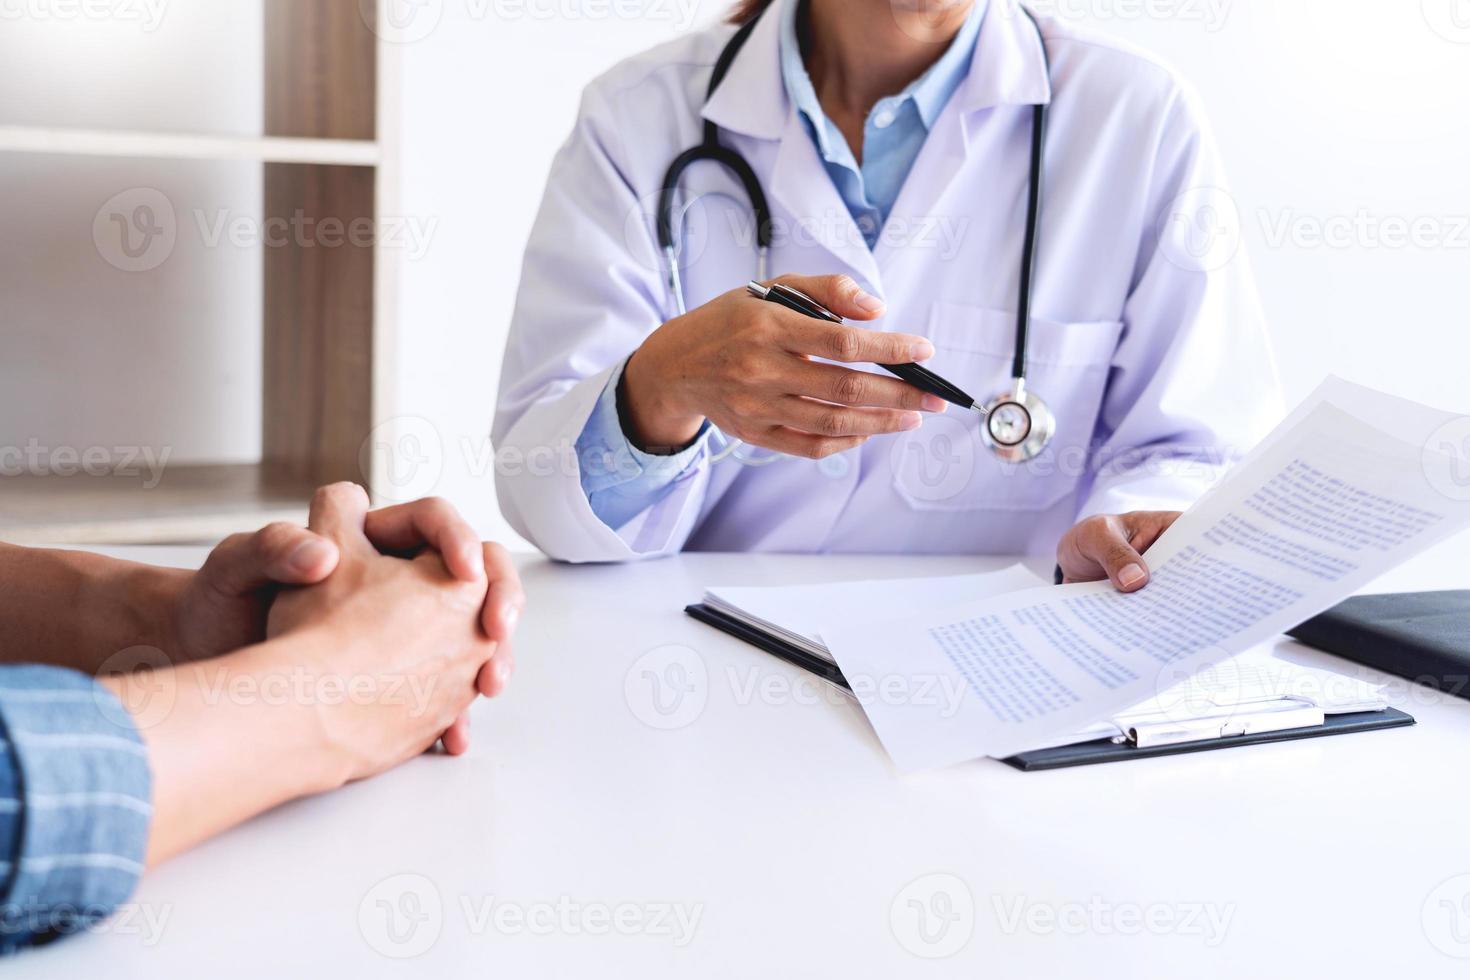 el paciente escucha atentamente a un médico que explica los síntomas del paciente o hace una pregunta mientras discuten el papeleo juntos en una consulta foto